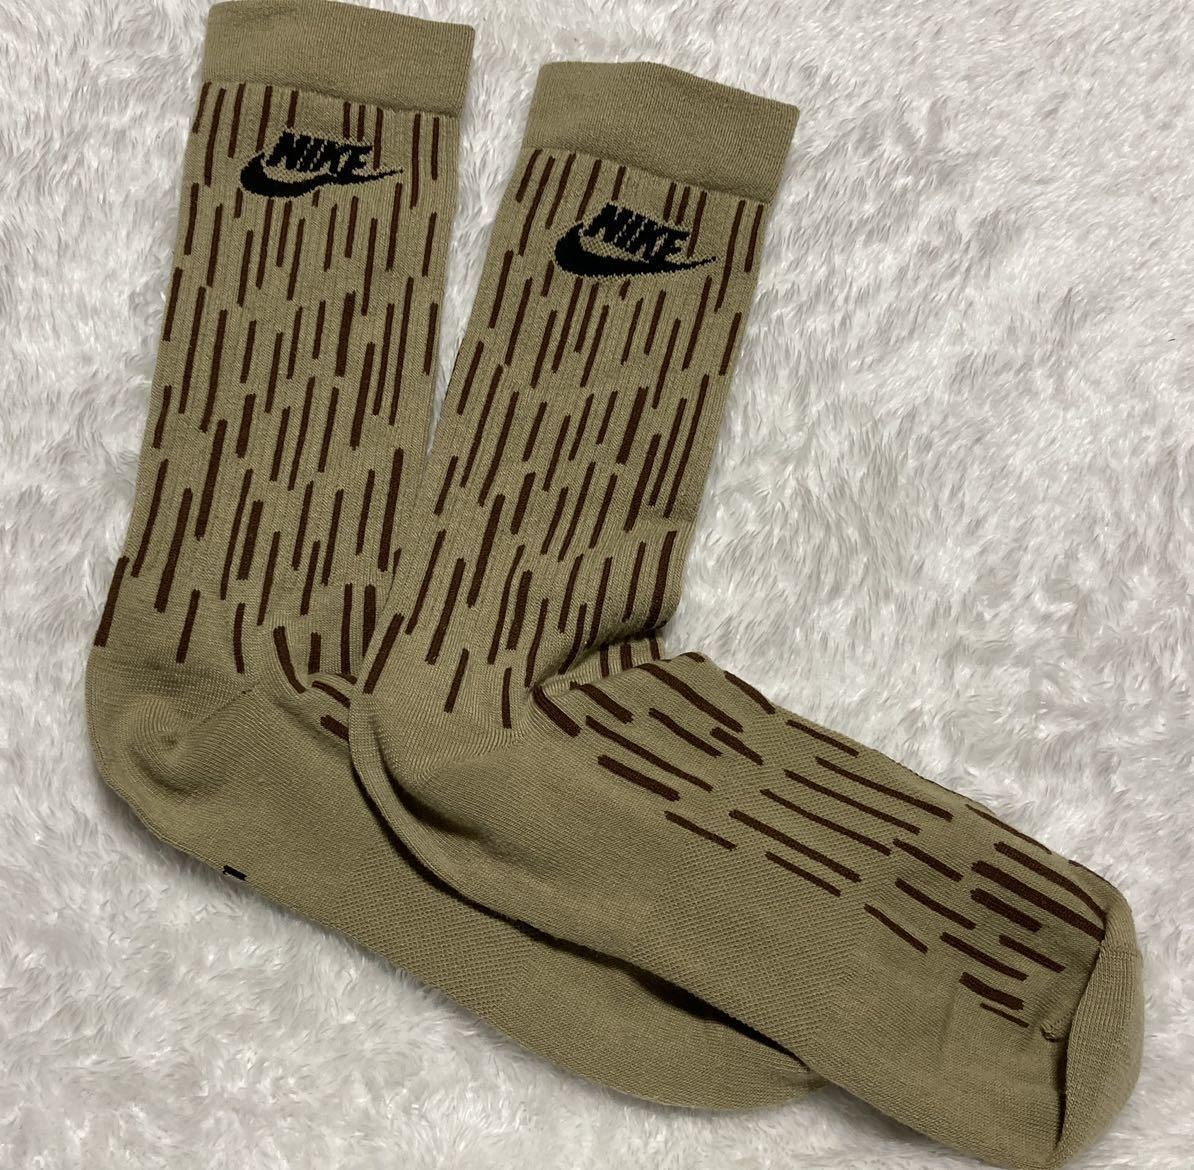 [23-25.] новый товар полная распродажа товар Nike камуфляж камуфляж -ju утка носки носки M размер NIKE 1P для мужчин и женщин / спортивные туфли Jordan Dunk ca